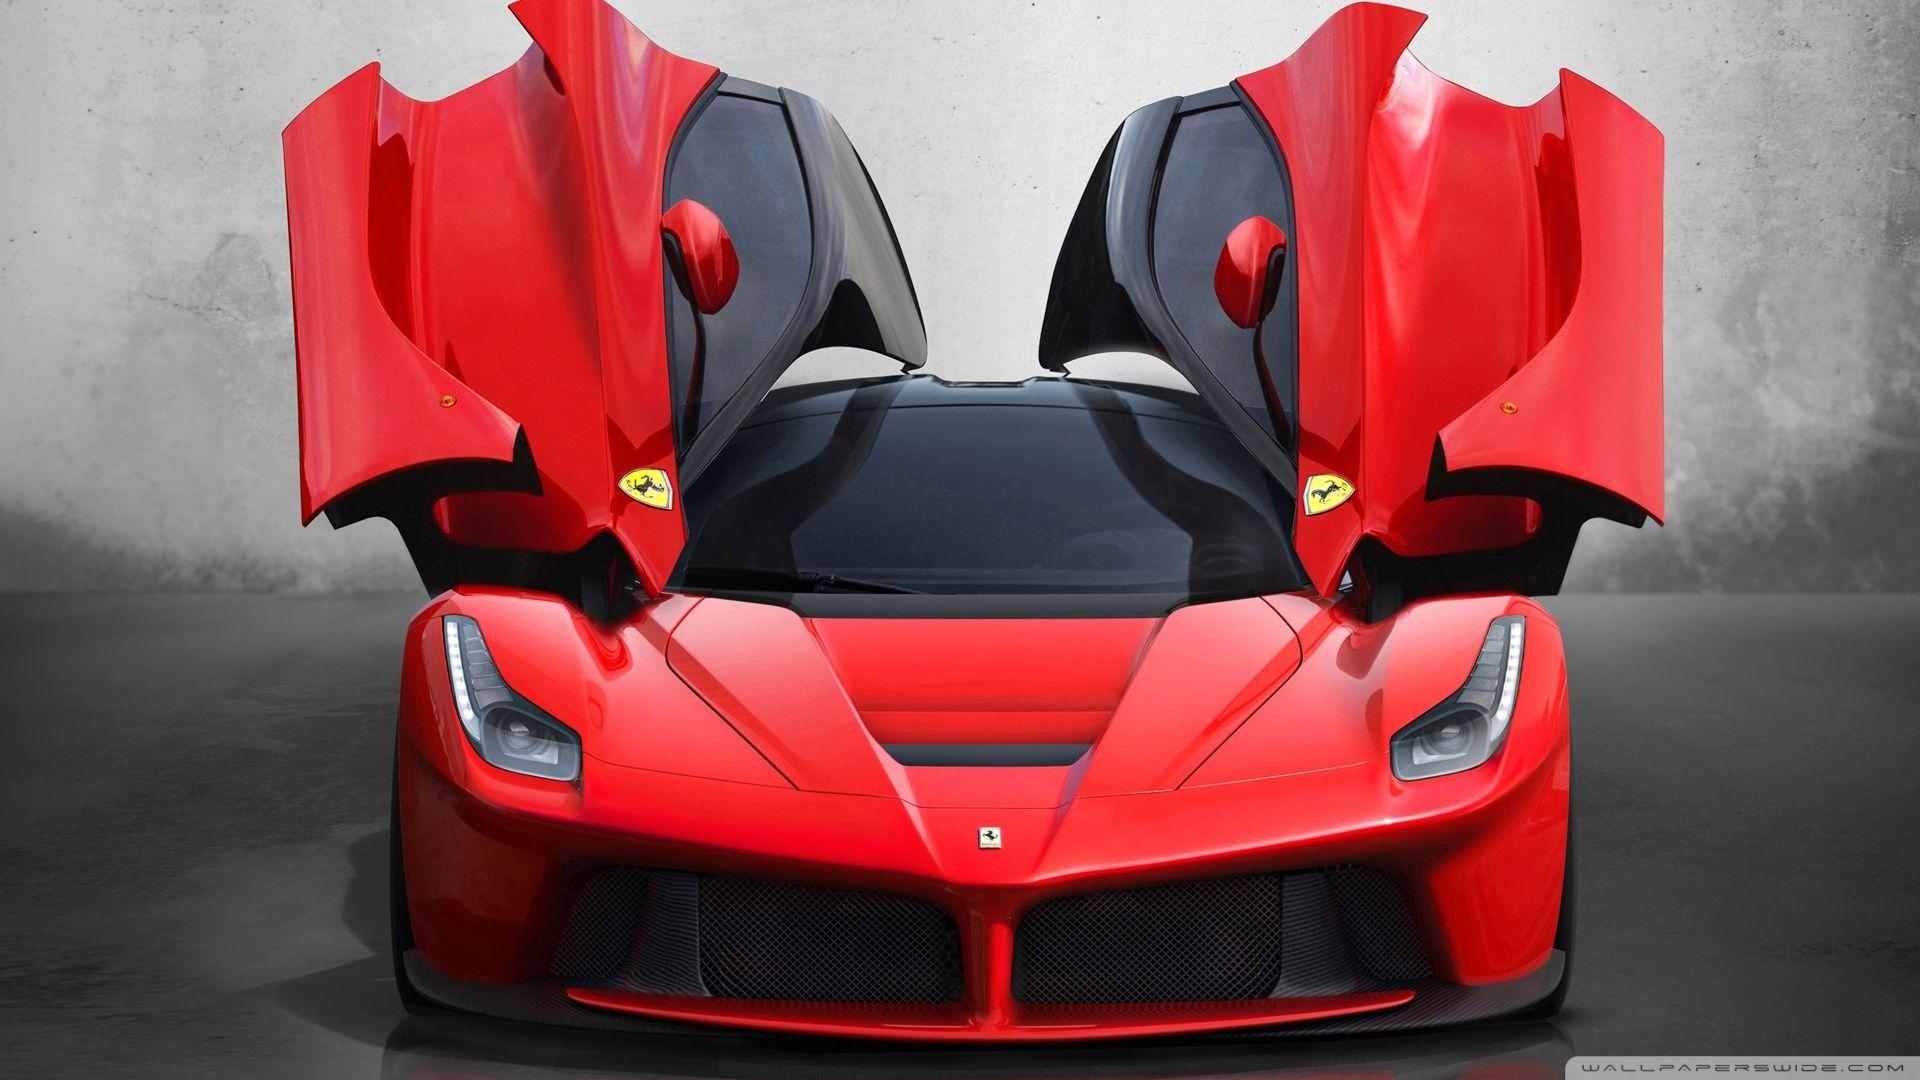 HD Ferrari Car Wallpapers 1080p  Wallpaper Cave